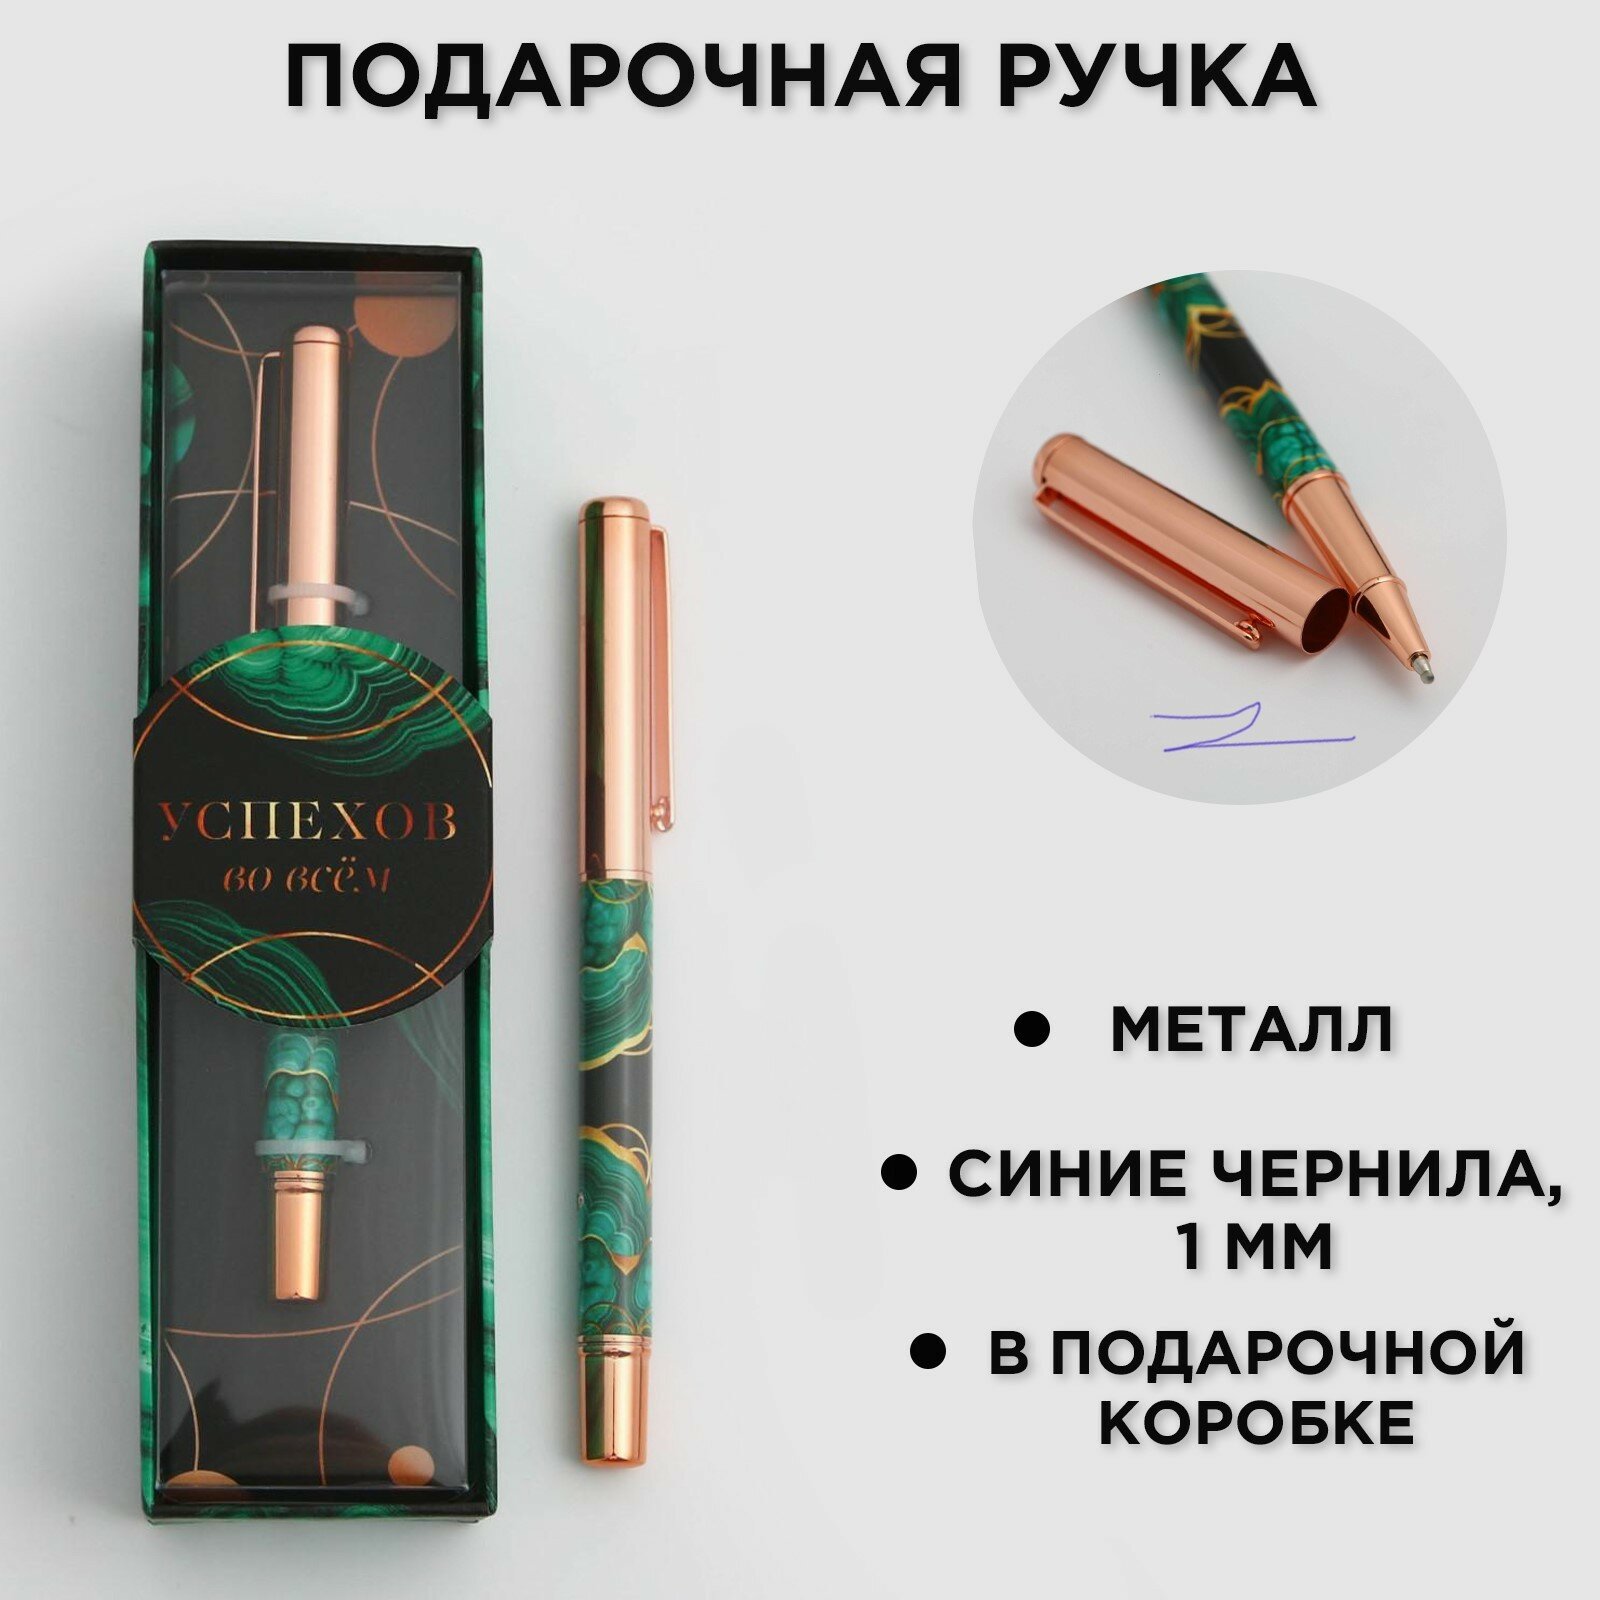 Ручка "Успехов во всём", металл (1шт.)